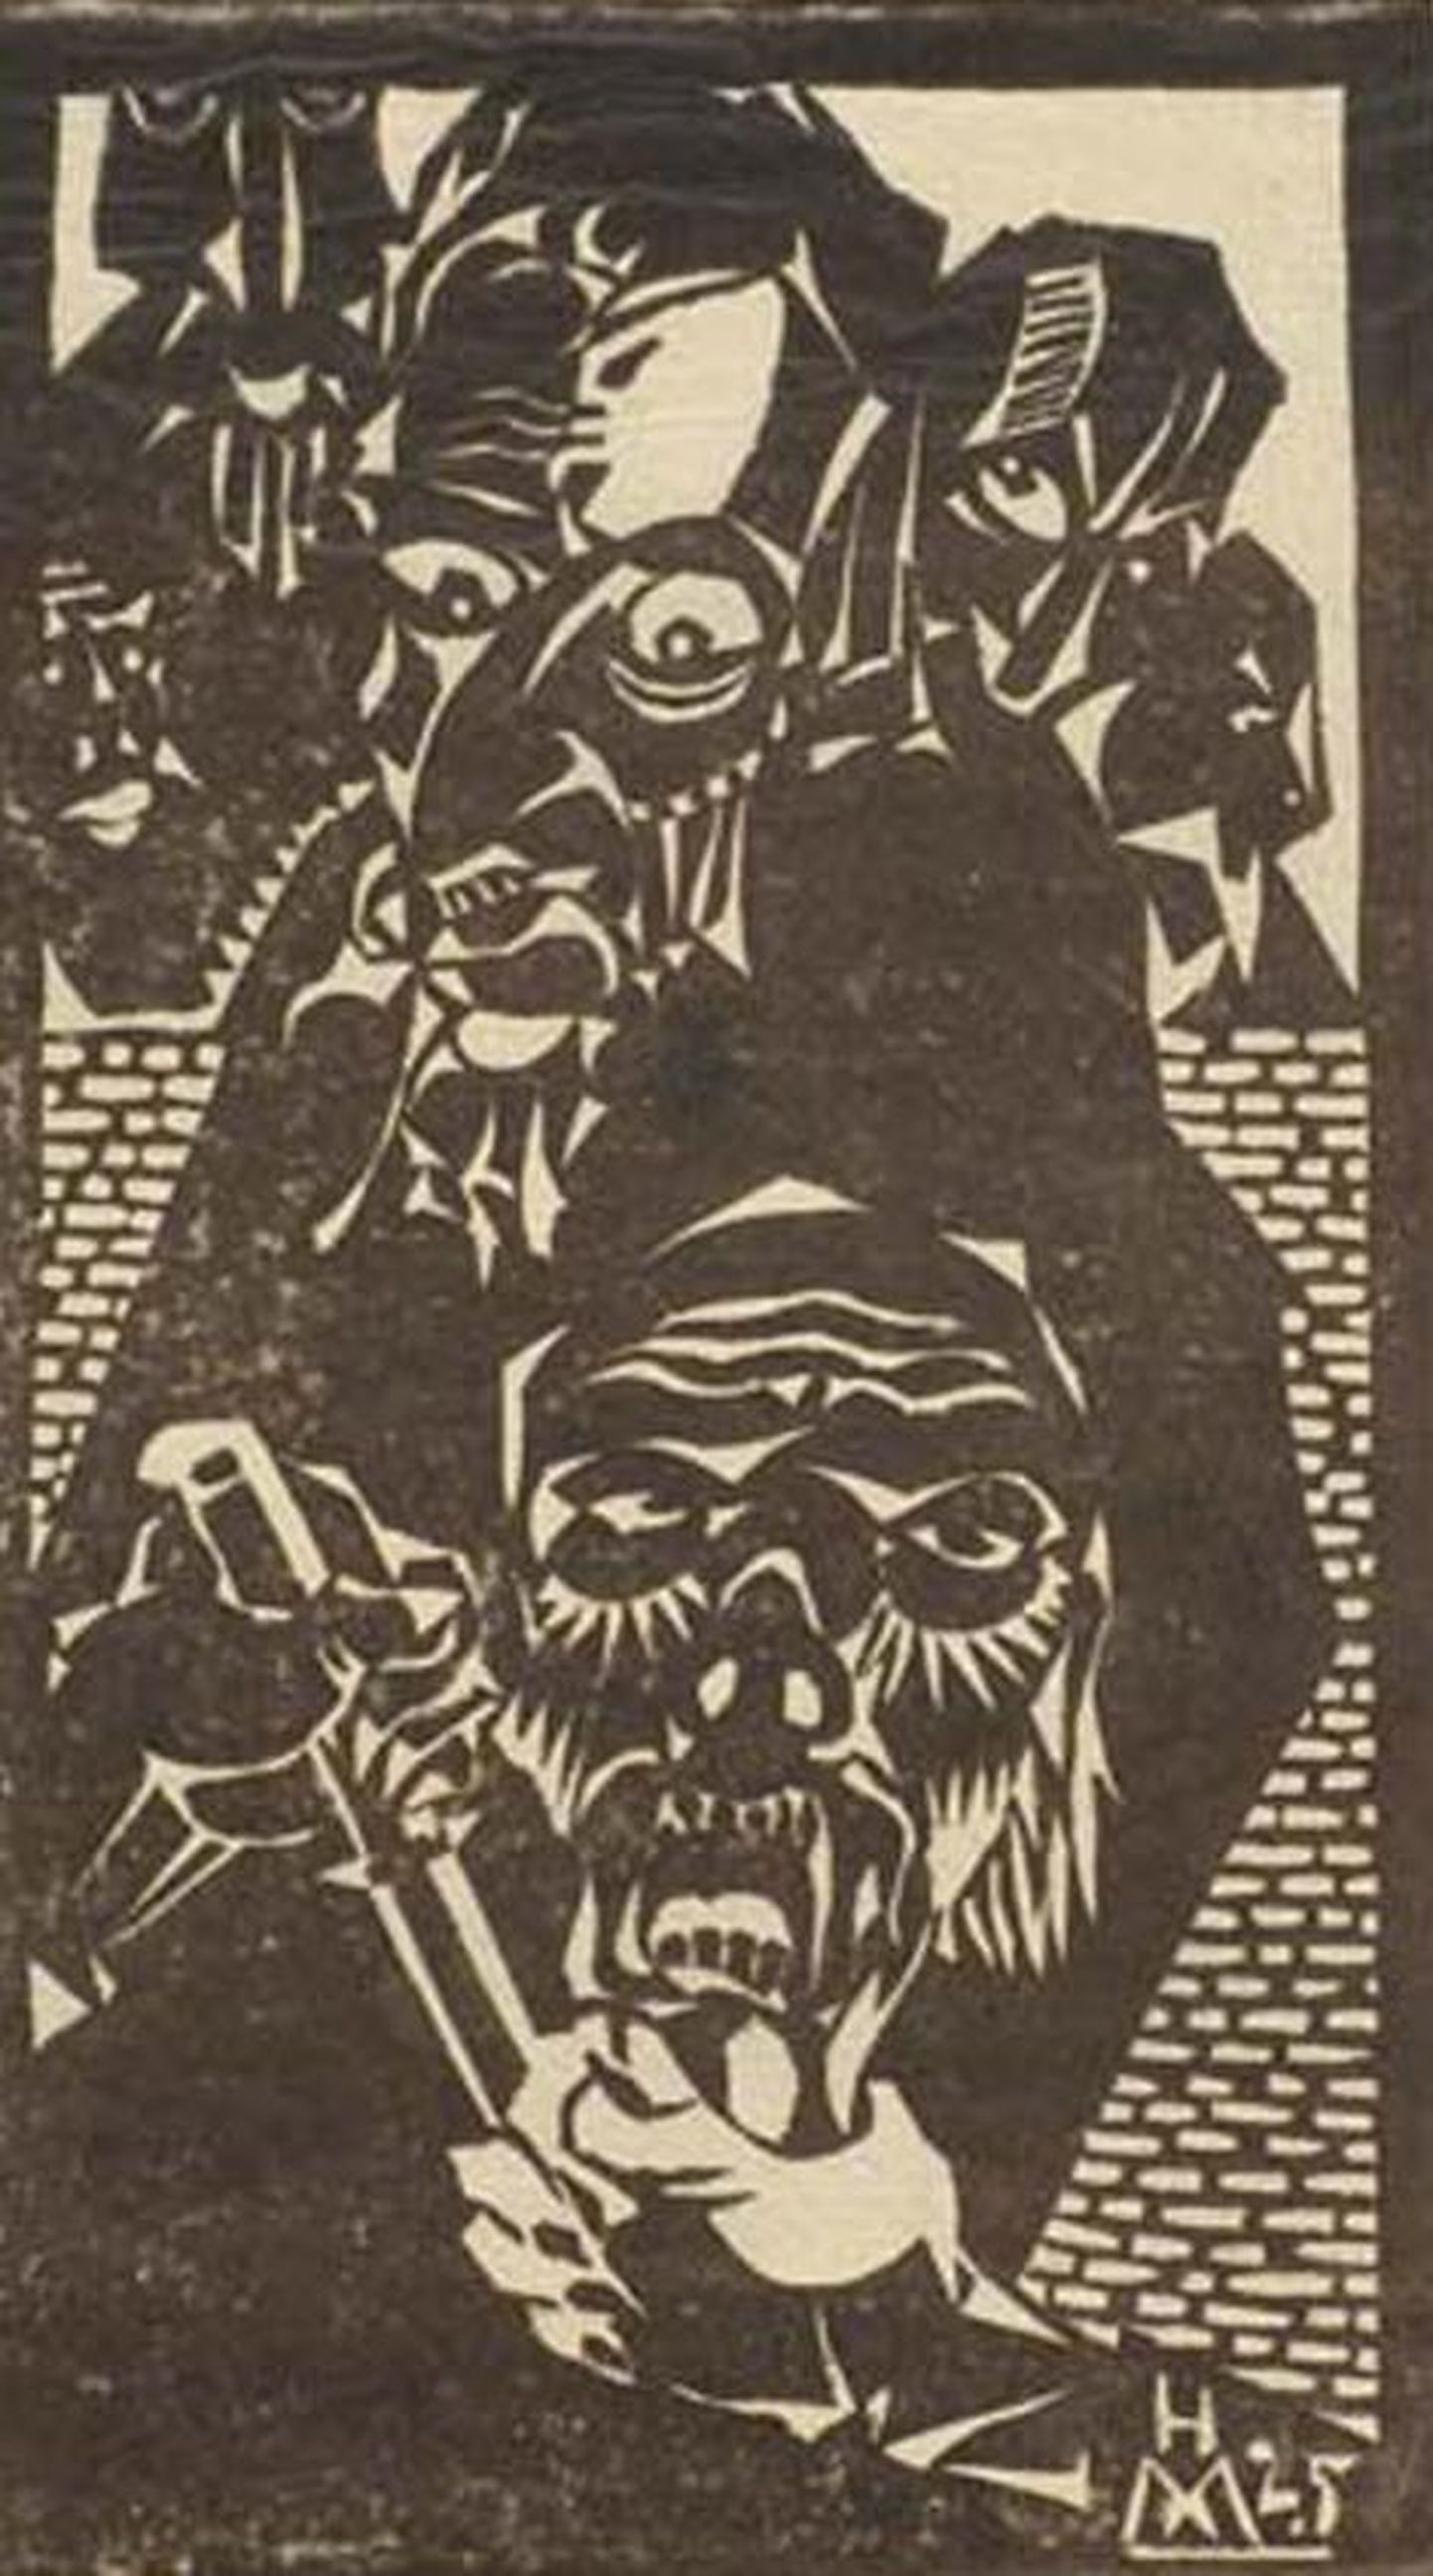 See Hando Mugasto linoollõige “Kujur” on valminud 1925. aastal, mil kunstnik oli 18-aastane, ning võis ka Rakveres näitusel väljas olla.